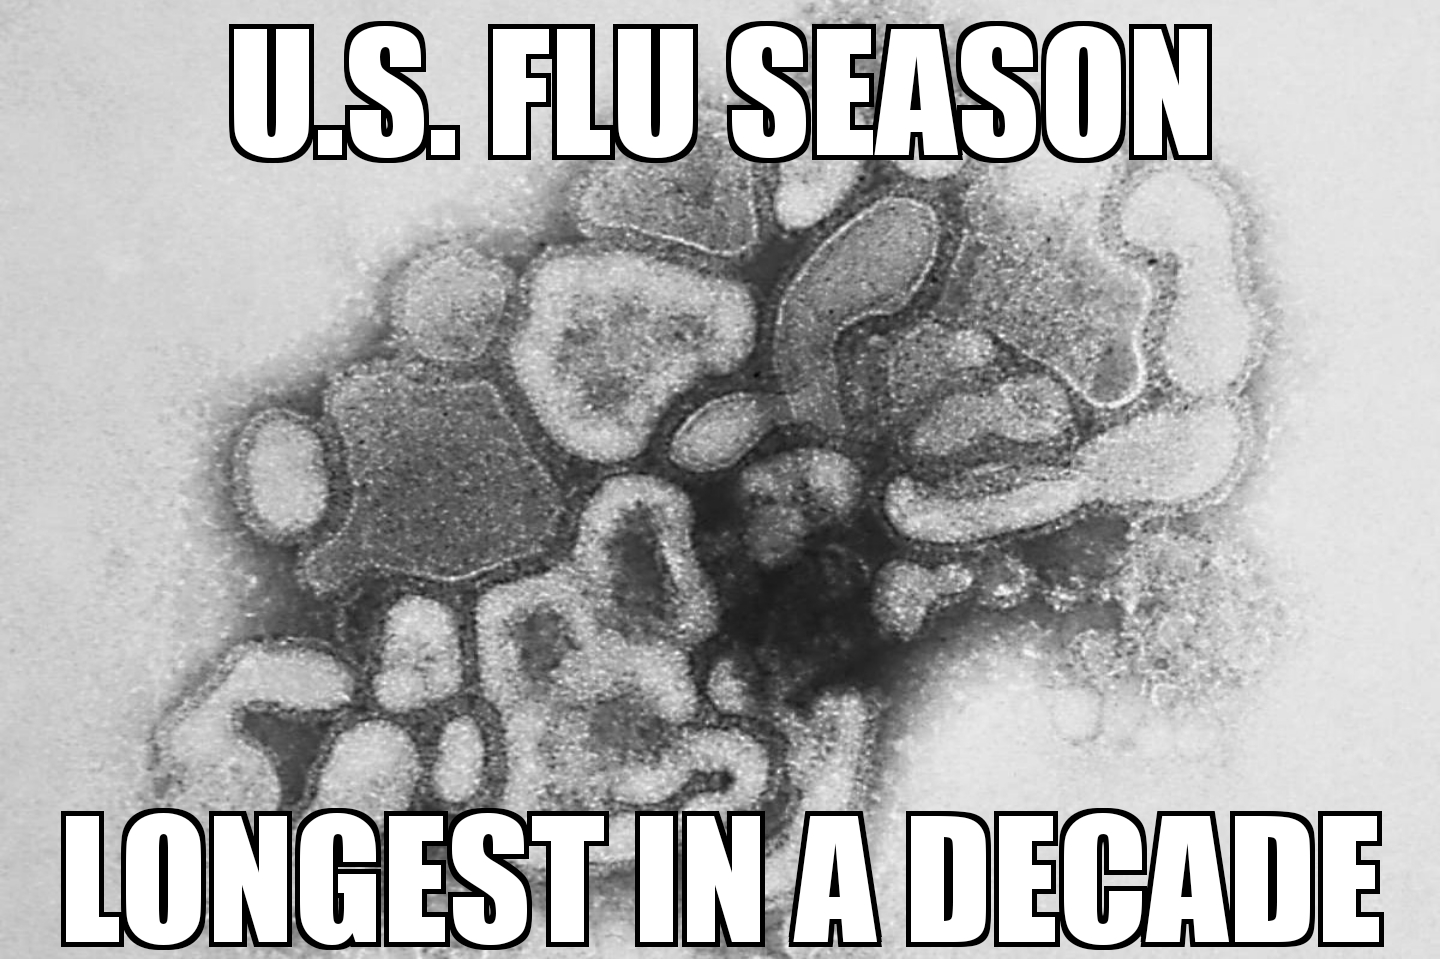 Longest flu season in a decade